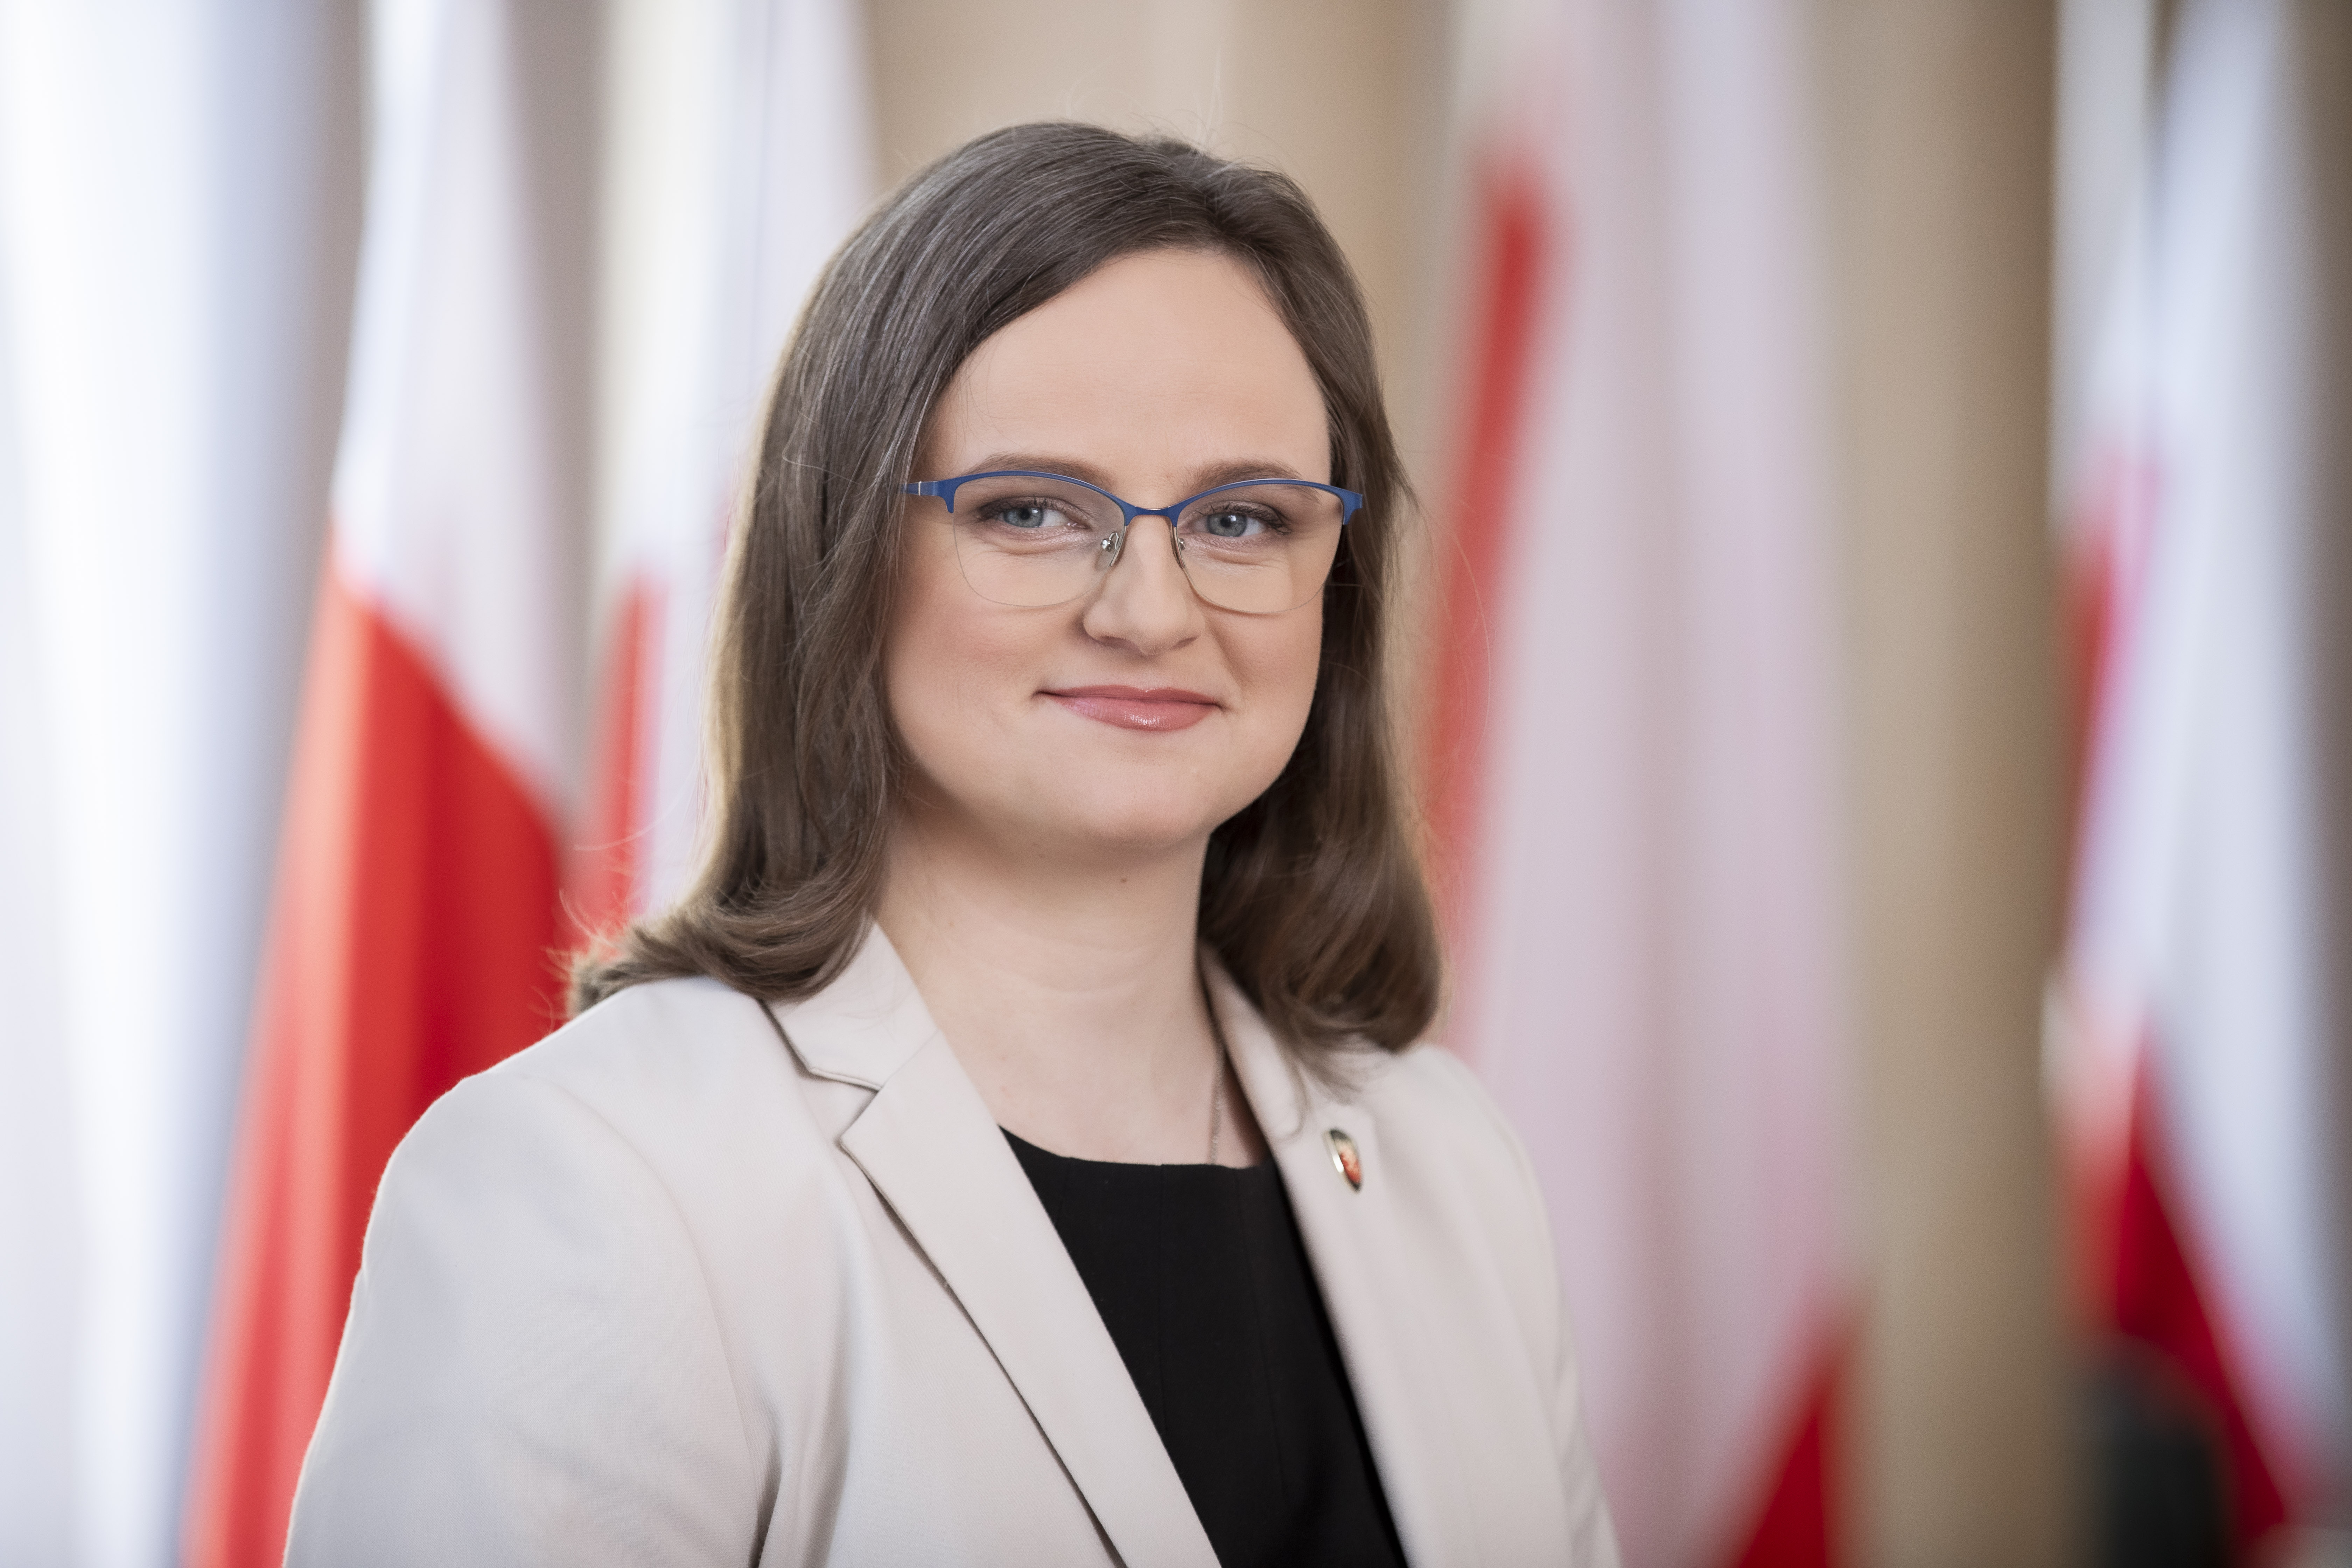 Anna Chałupa Podsekretarz Stanu, Zastępca Szefa Krajowej Administracji Skarbowej na tle flag